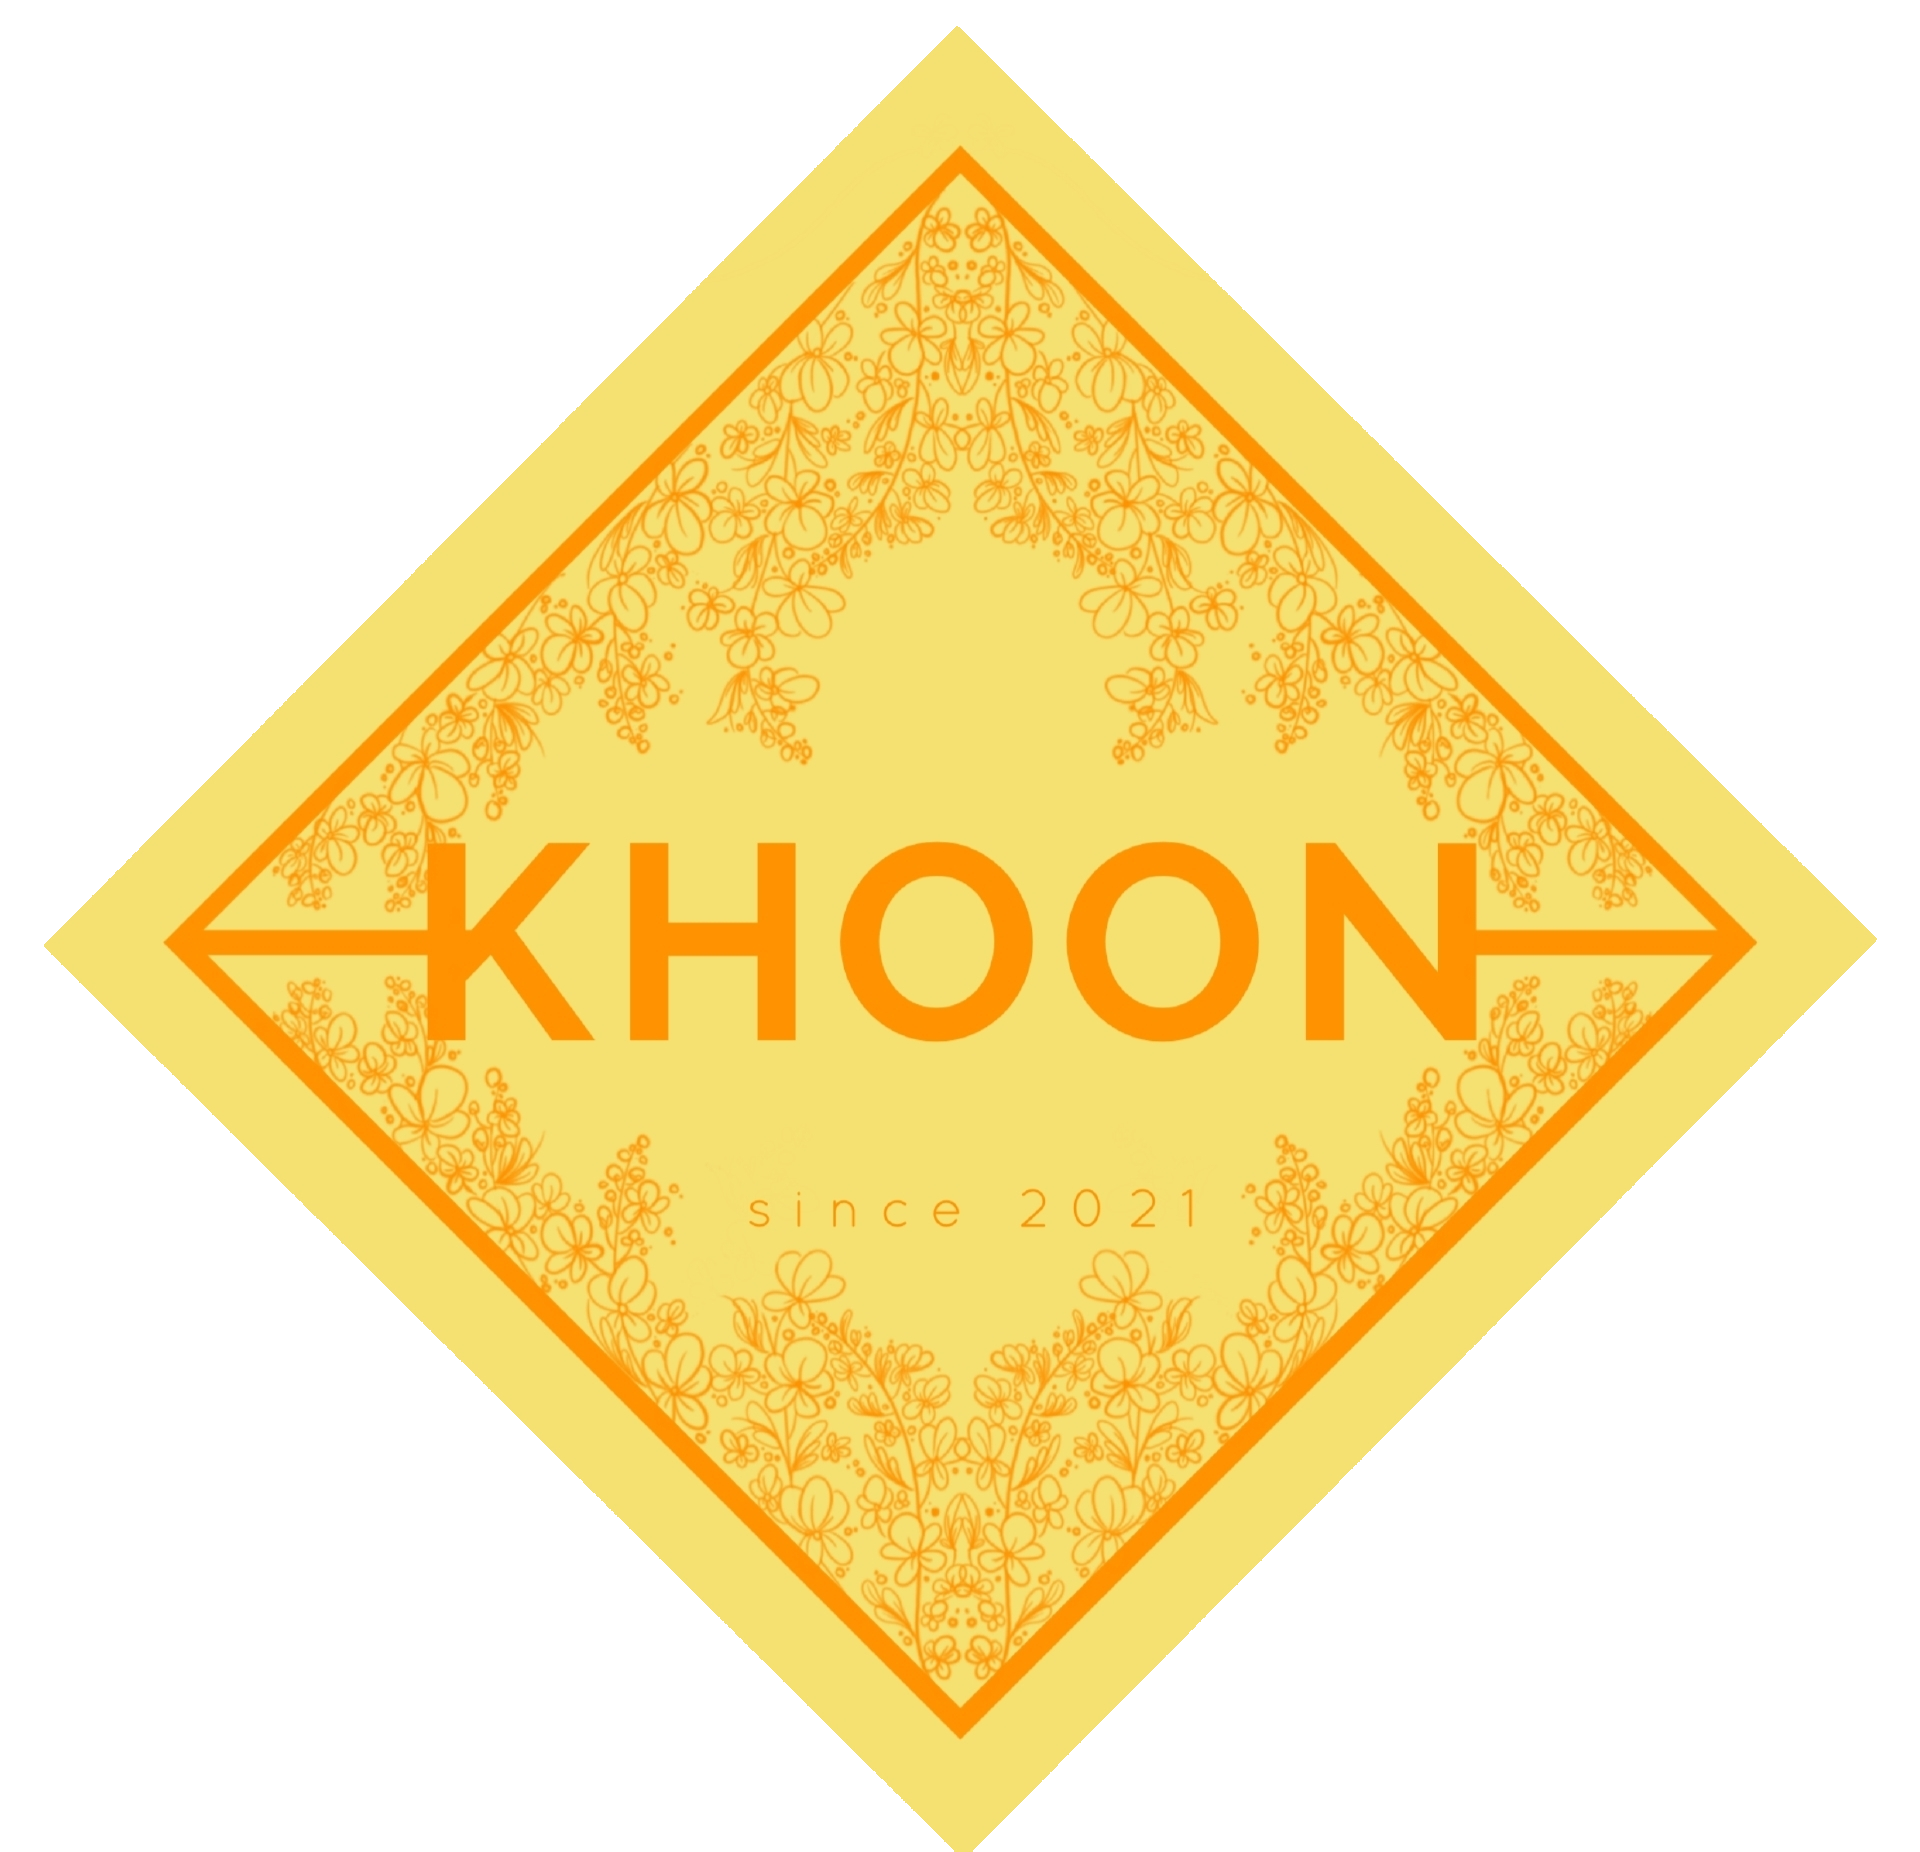 Khoon-Markt